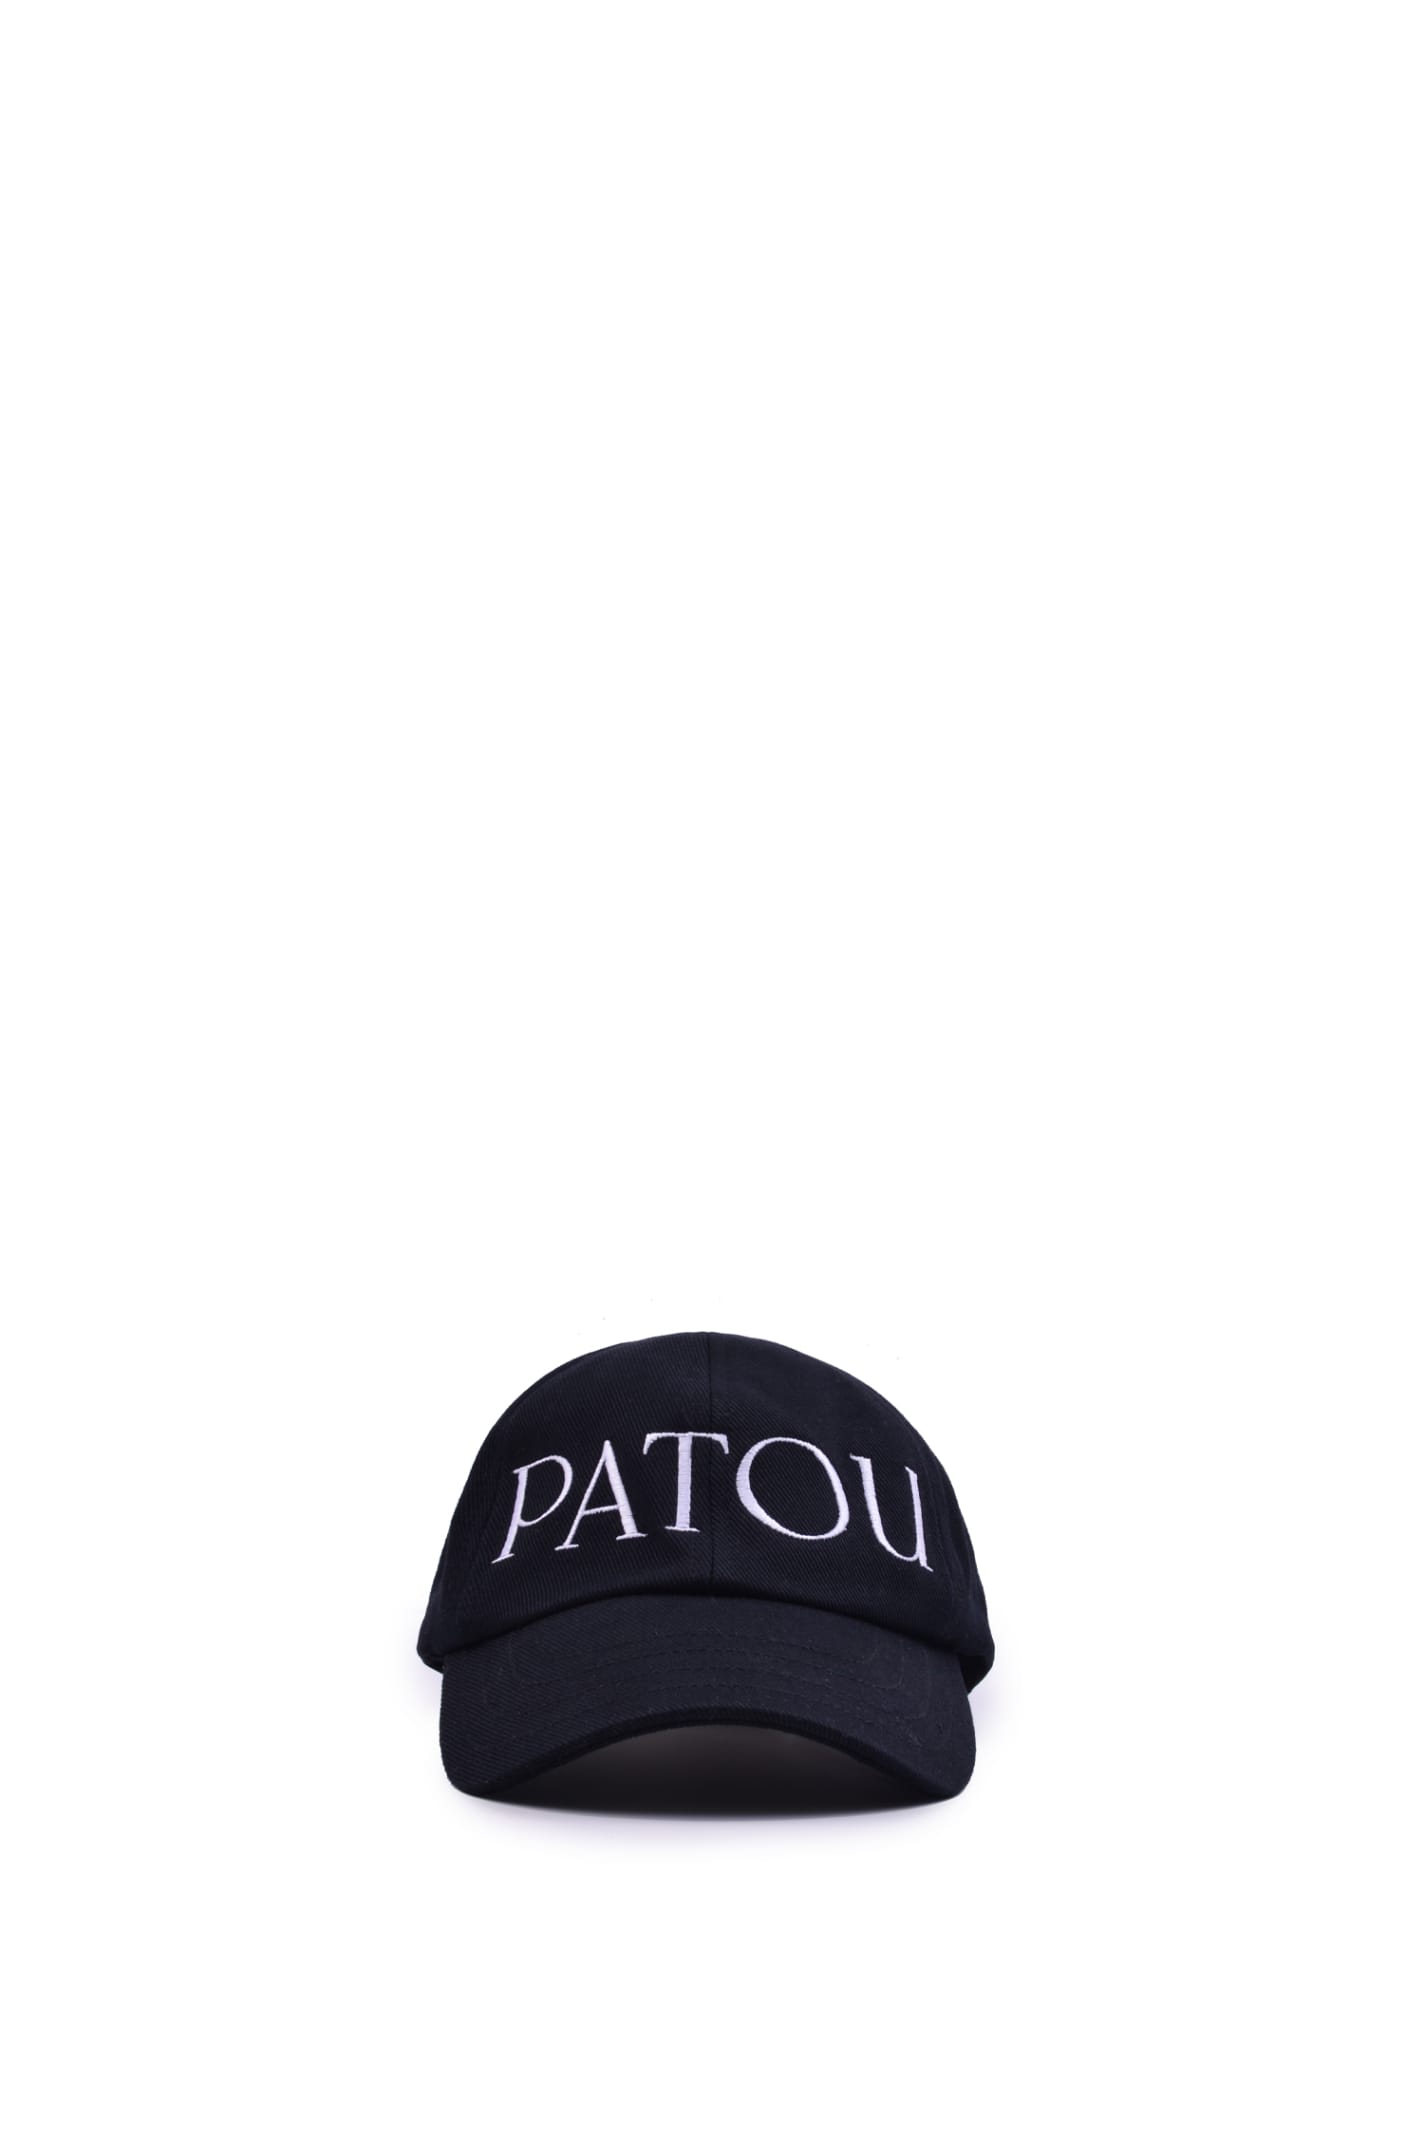 Patou Cotton Hat In B Black